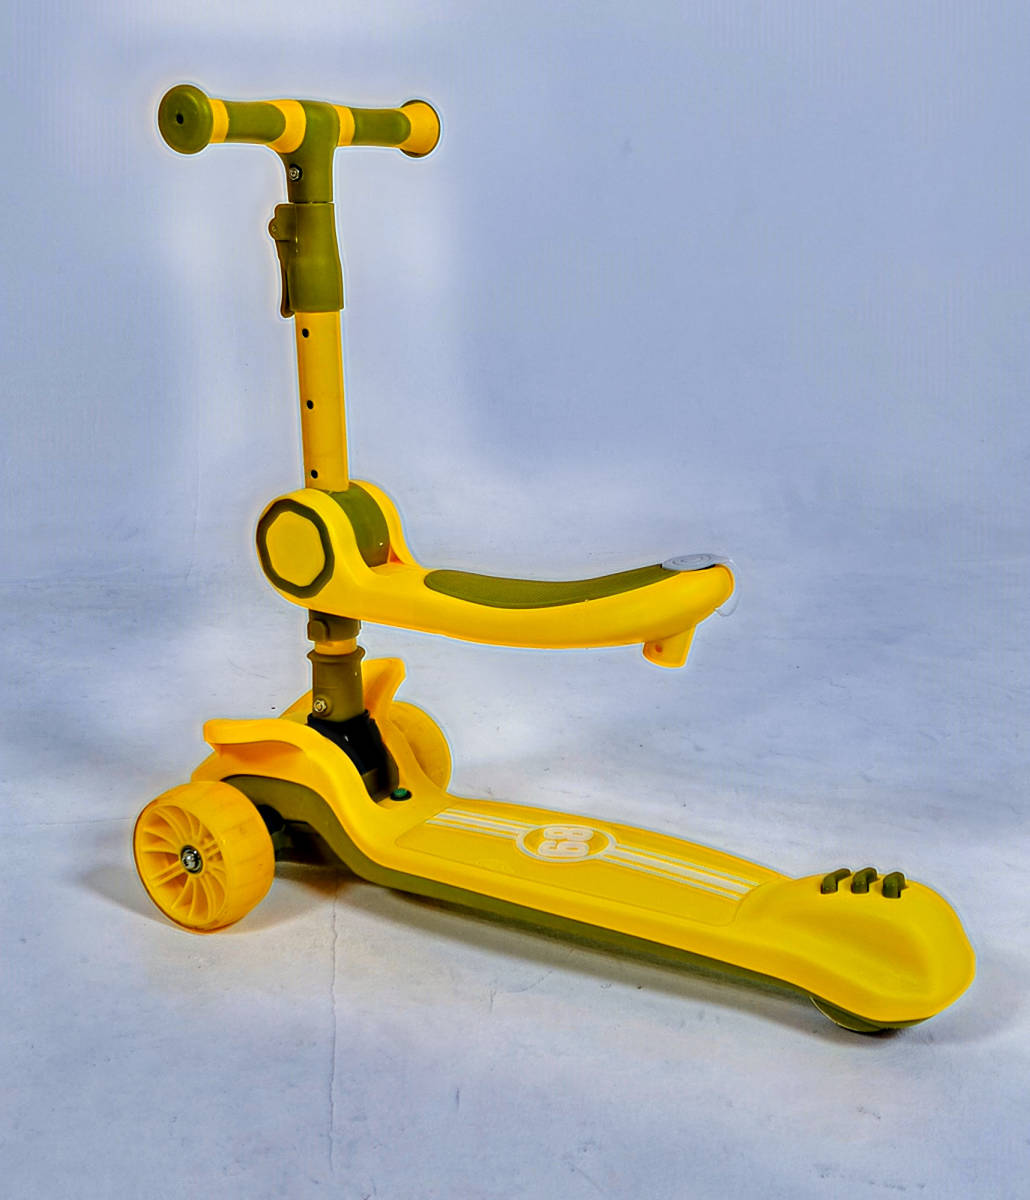 1 желтый #80% off . быстрое решение #2.. веселье person . есть #2WAY# самокат # панель Like # Kics ke-ta-# самокат # ручная тележка # трехколесный велосипед 